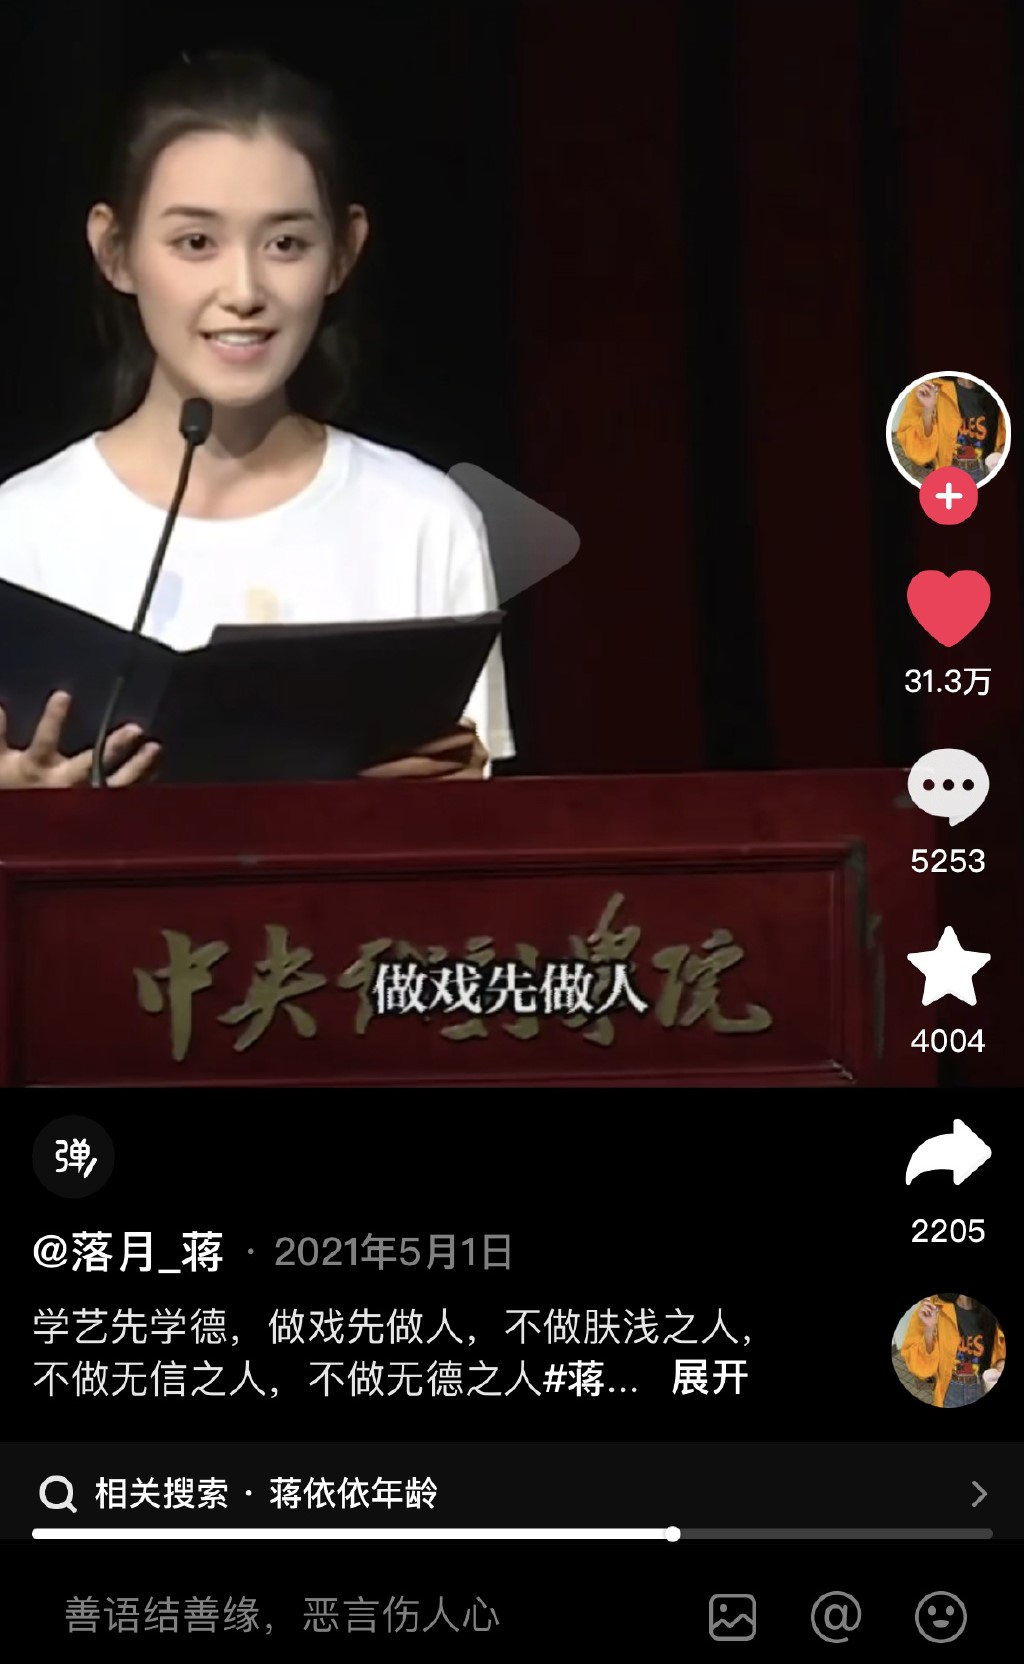 2019年中央戏剧学院举行新生开学典礼，蒋依依作为新生代表上台发言表示「学艺先学德，做戏先做人。」